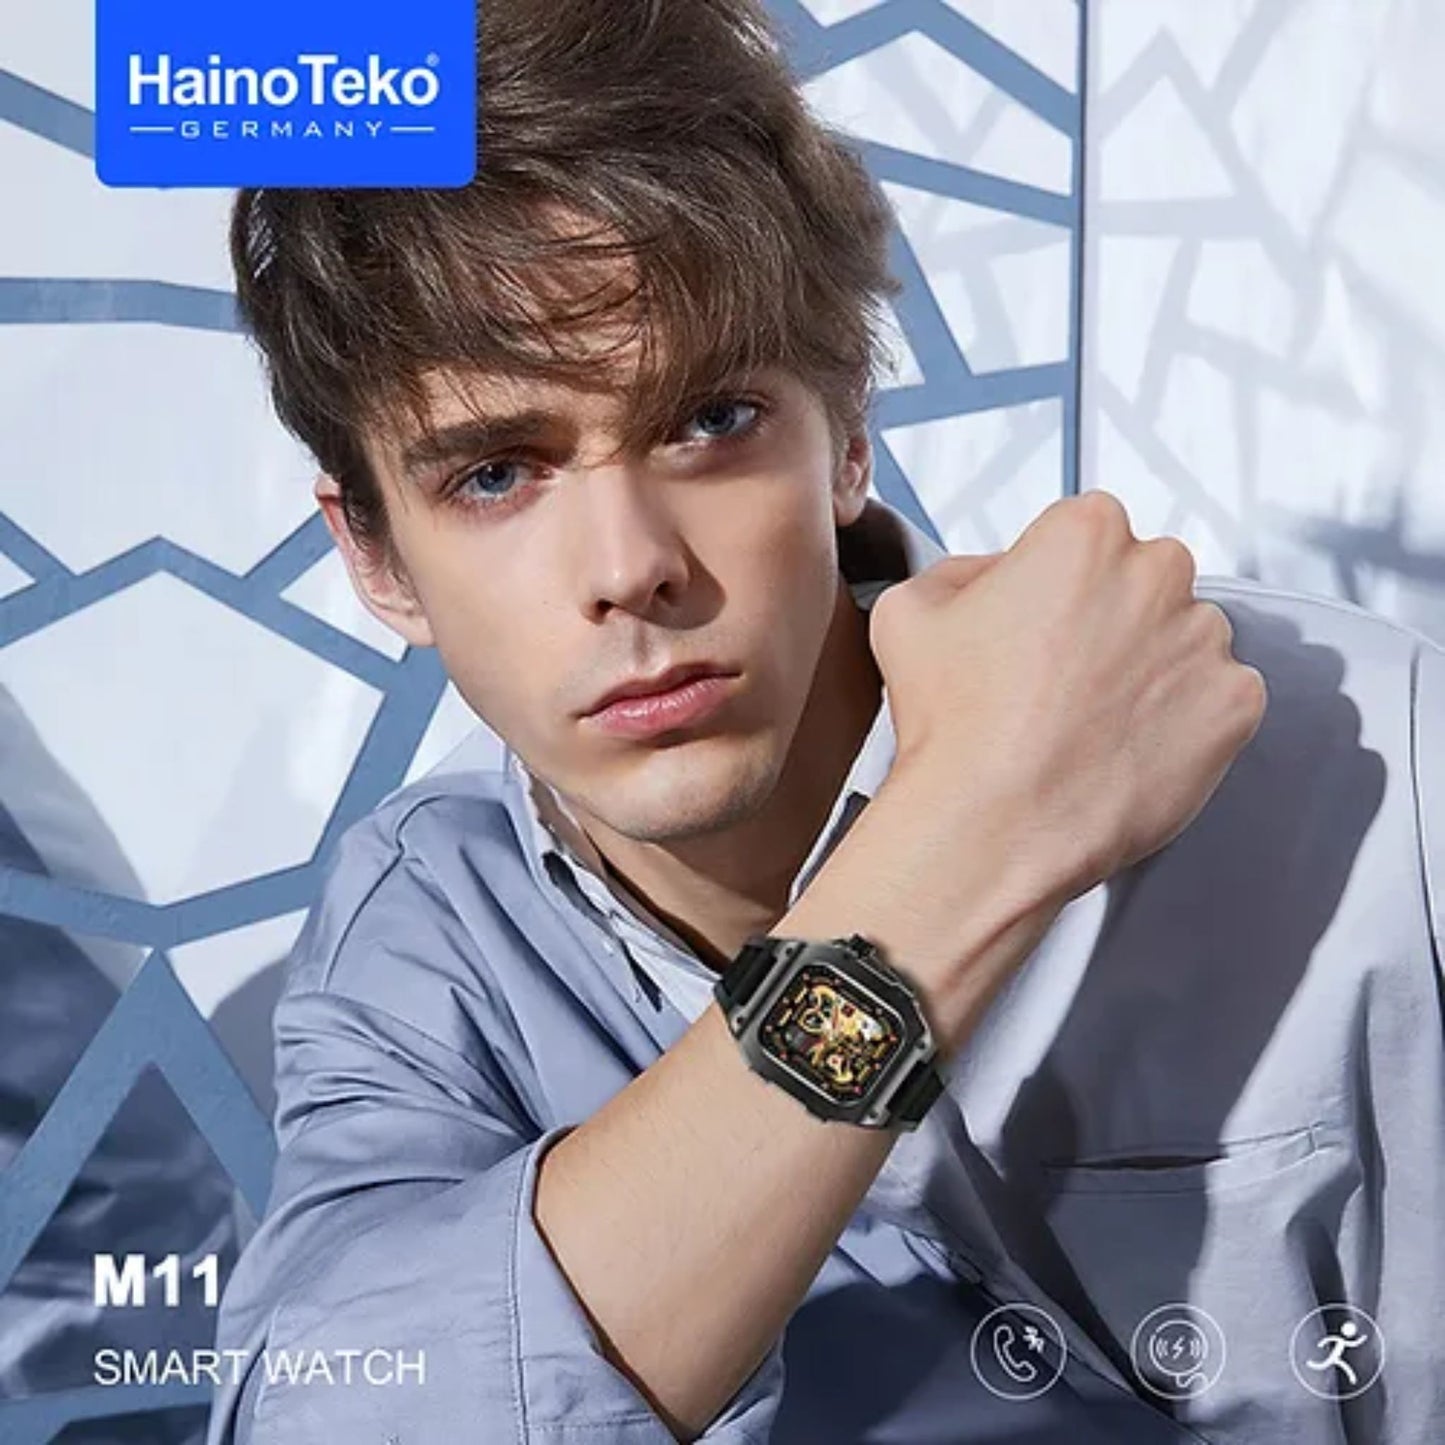 Premium Haino Teko Germany Richard M11 Smart Watch_Black